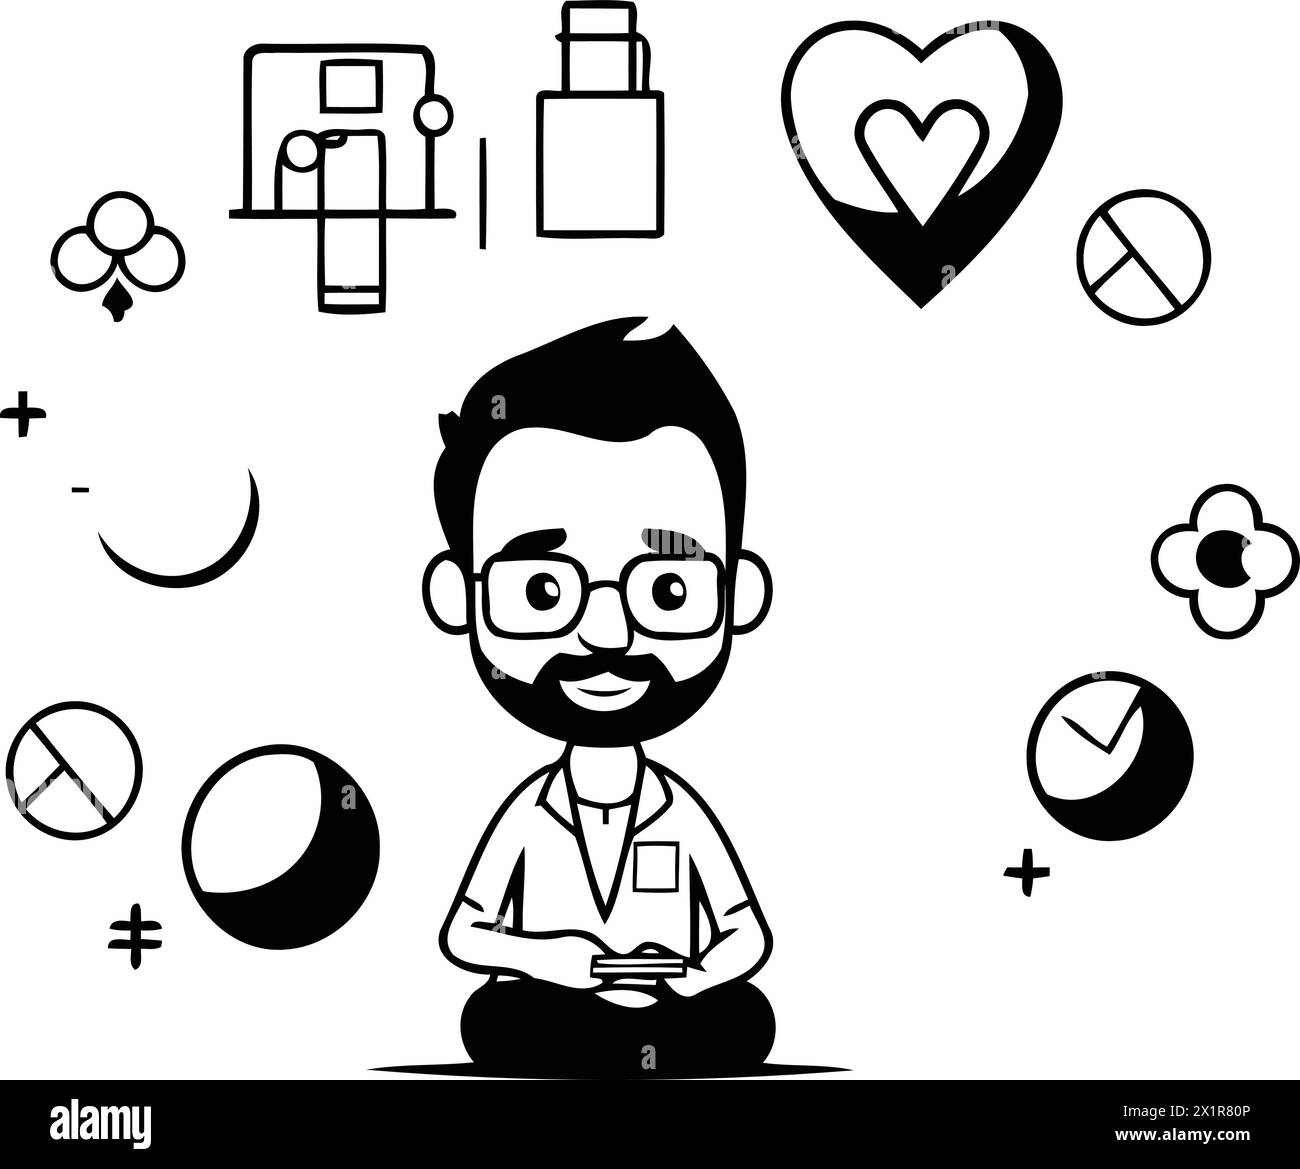 Uomo con icone relative alla salute mentale su sfondo bianco. design colorato. illustrazione vettoriale Illustrazione Vettoriale